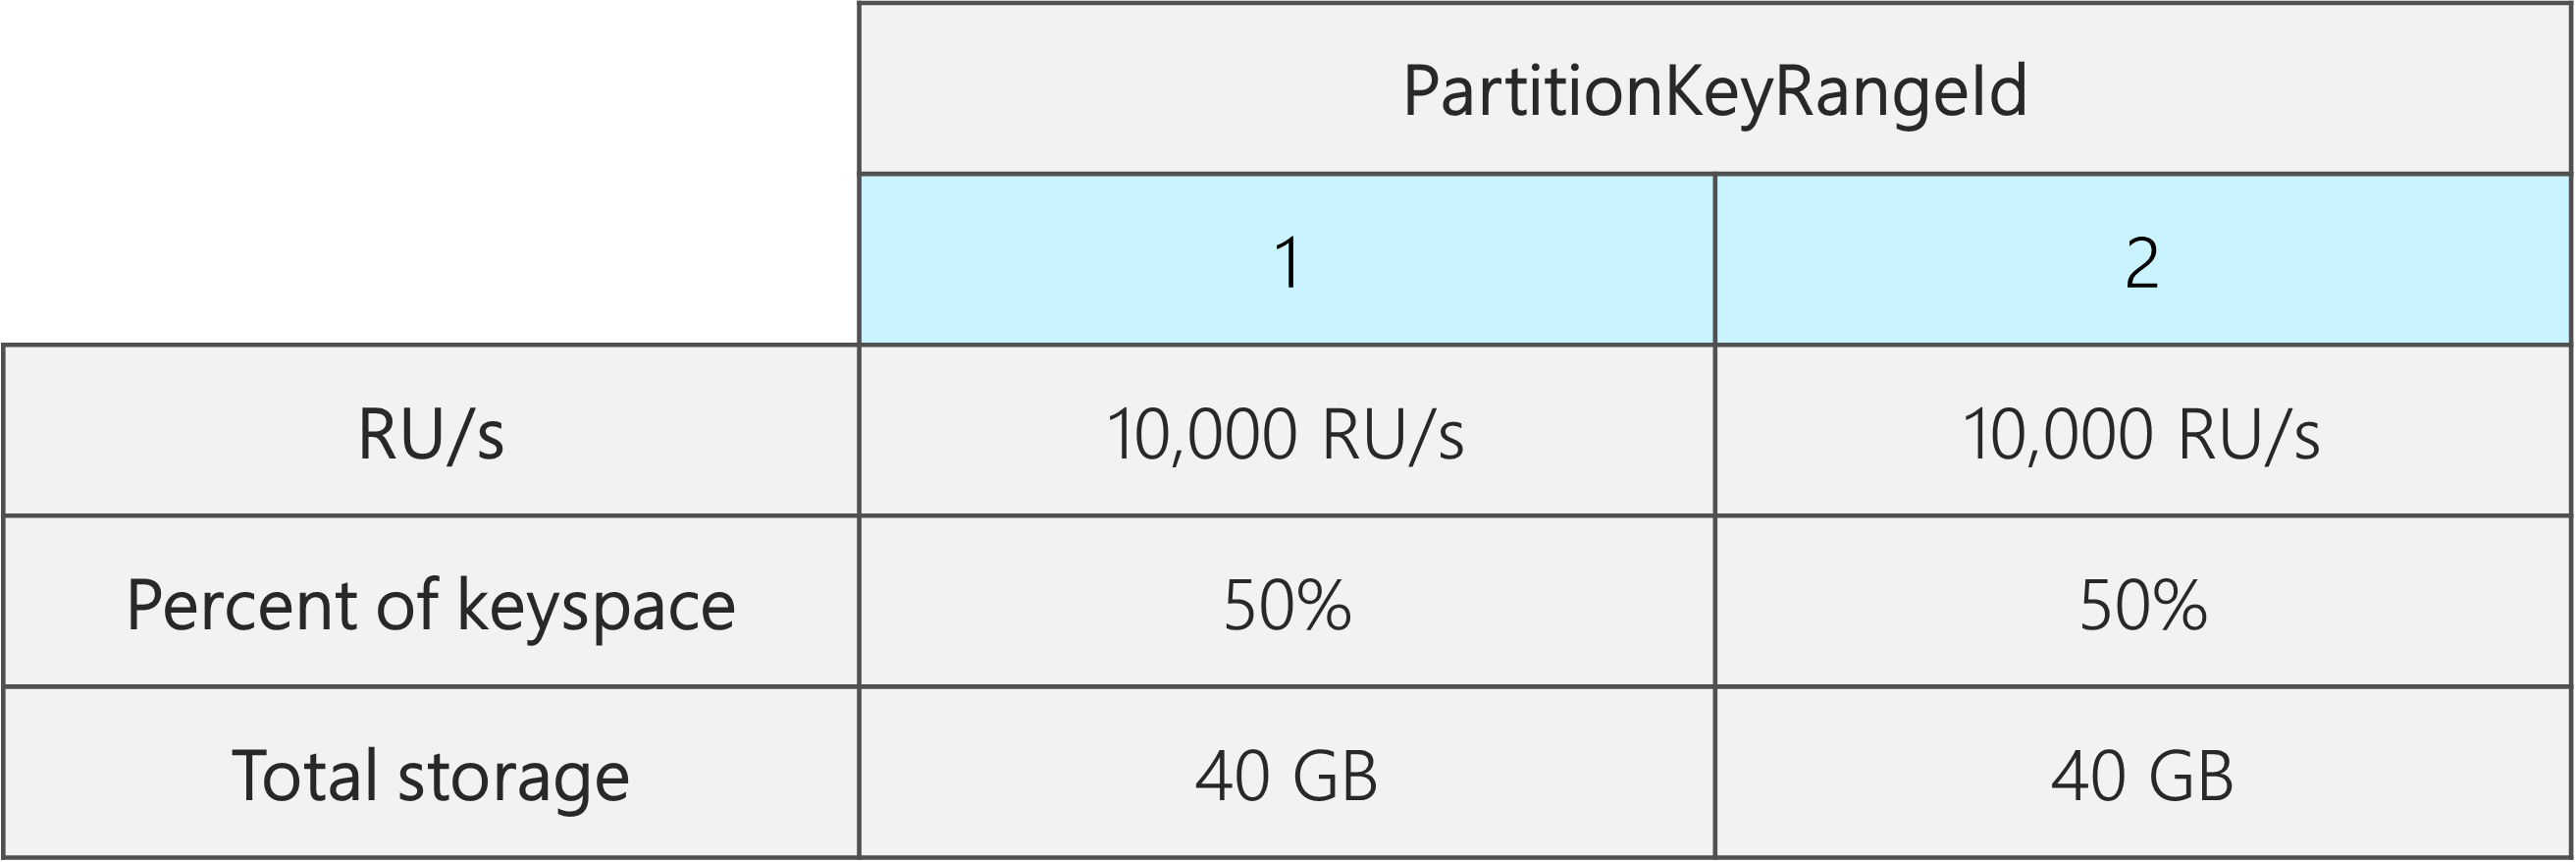 Duas PartitionKeyRangeIds, cada uma com 10.000 RU/s, 40 GB e 50% do keyspace total